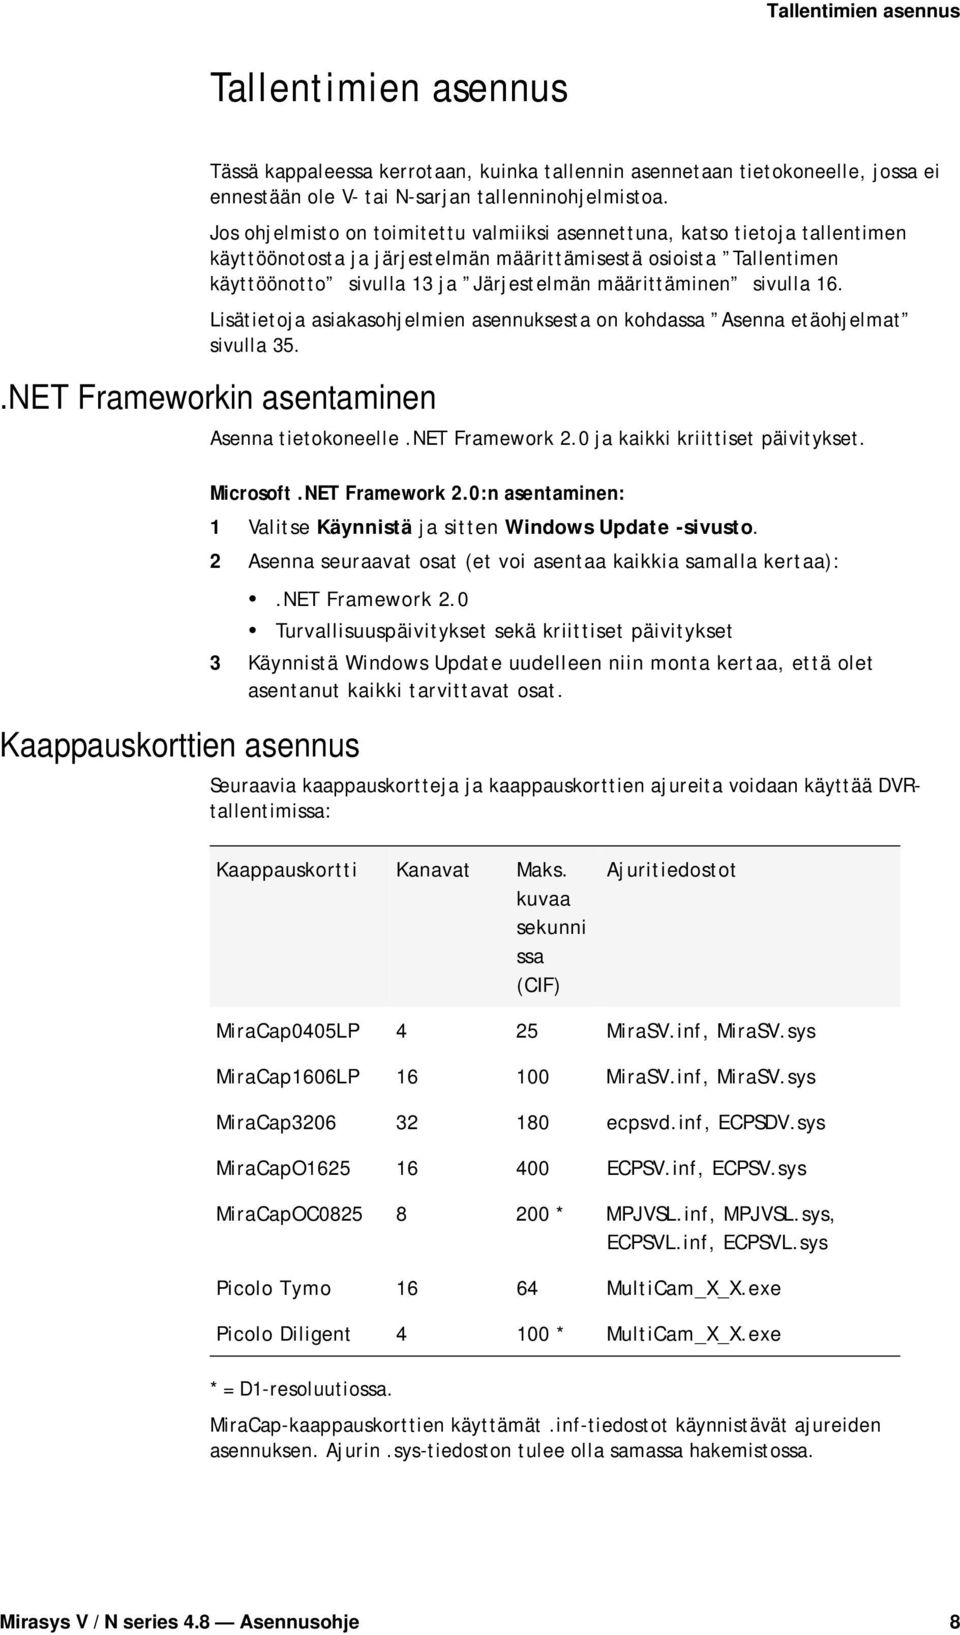 sivulla 16. Lisätietoja asiakasohjelmien asennuksesta on kohdassa Asenna etäohjelmat sivulla 35..NET Frameworkin asentaminen Kaappauskorttien asennus Asenna tietokoneelle.net Framework 2.